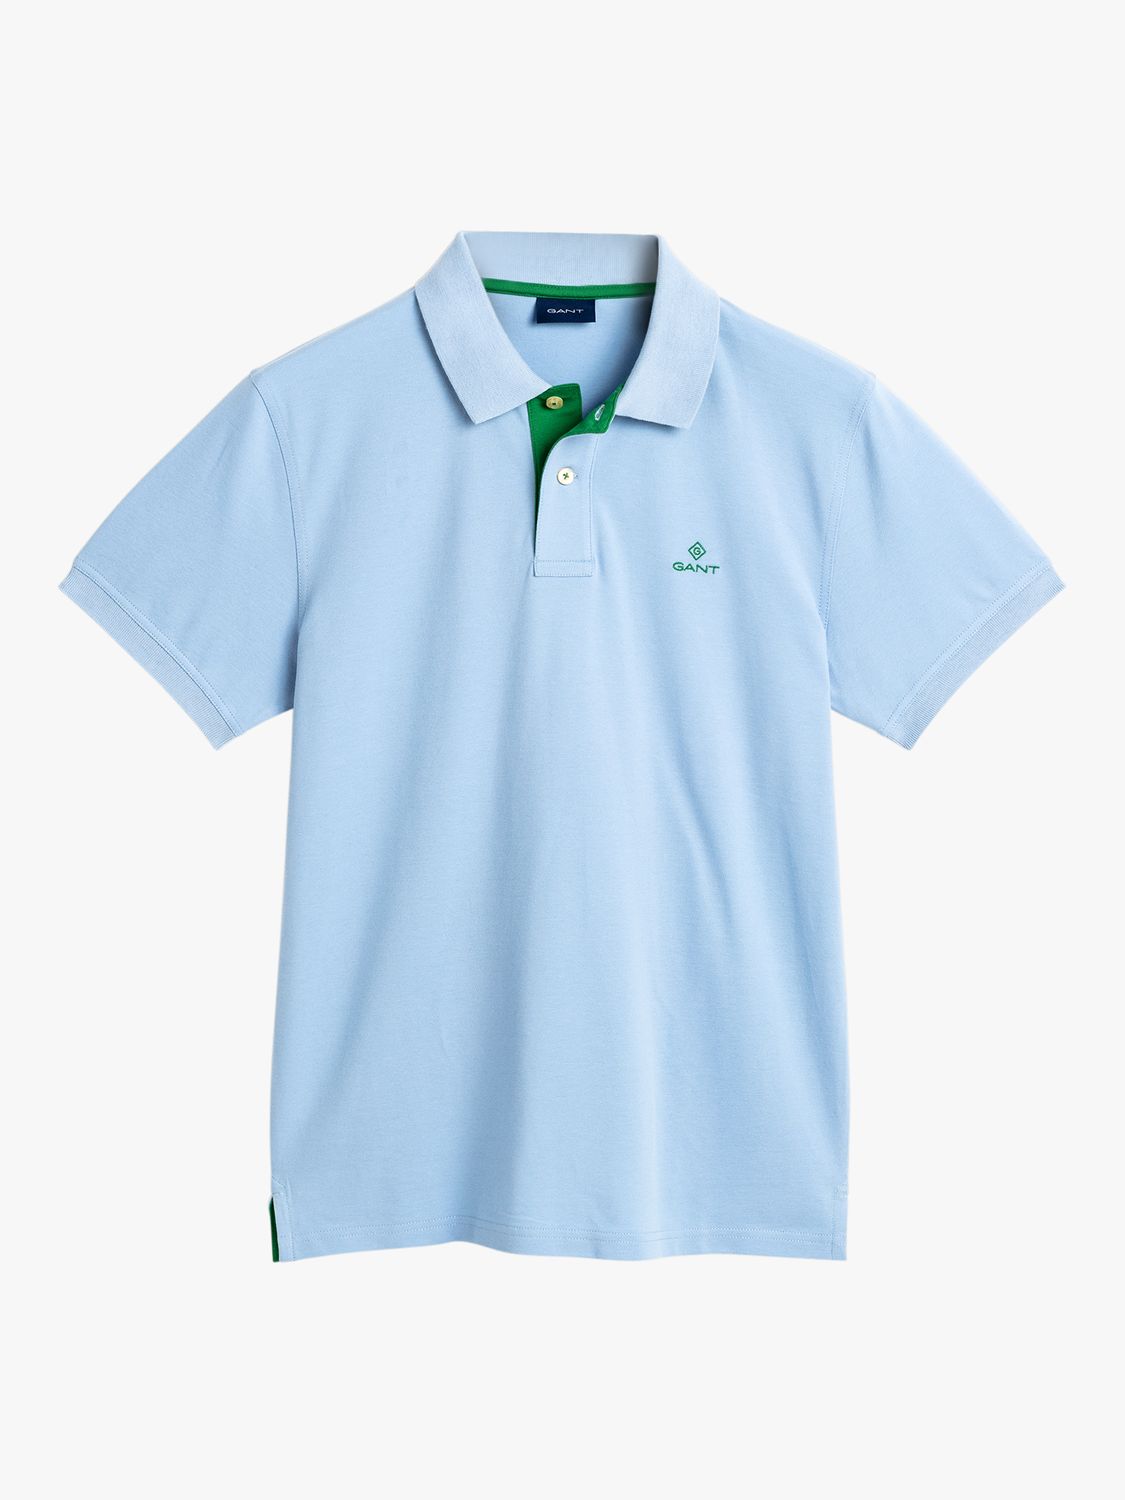 GANT Contrast Collar Pique Short Sleeve Polo Shirt